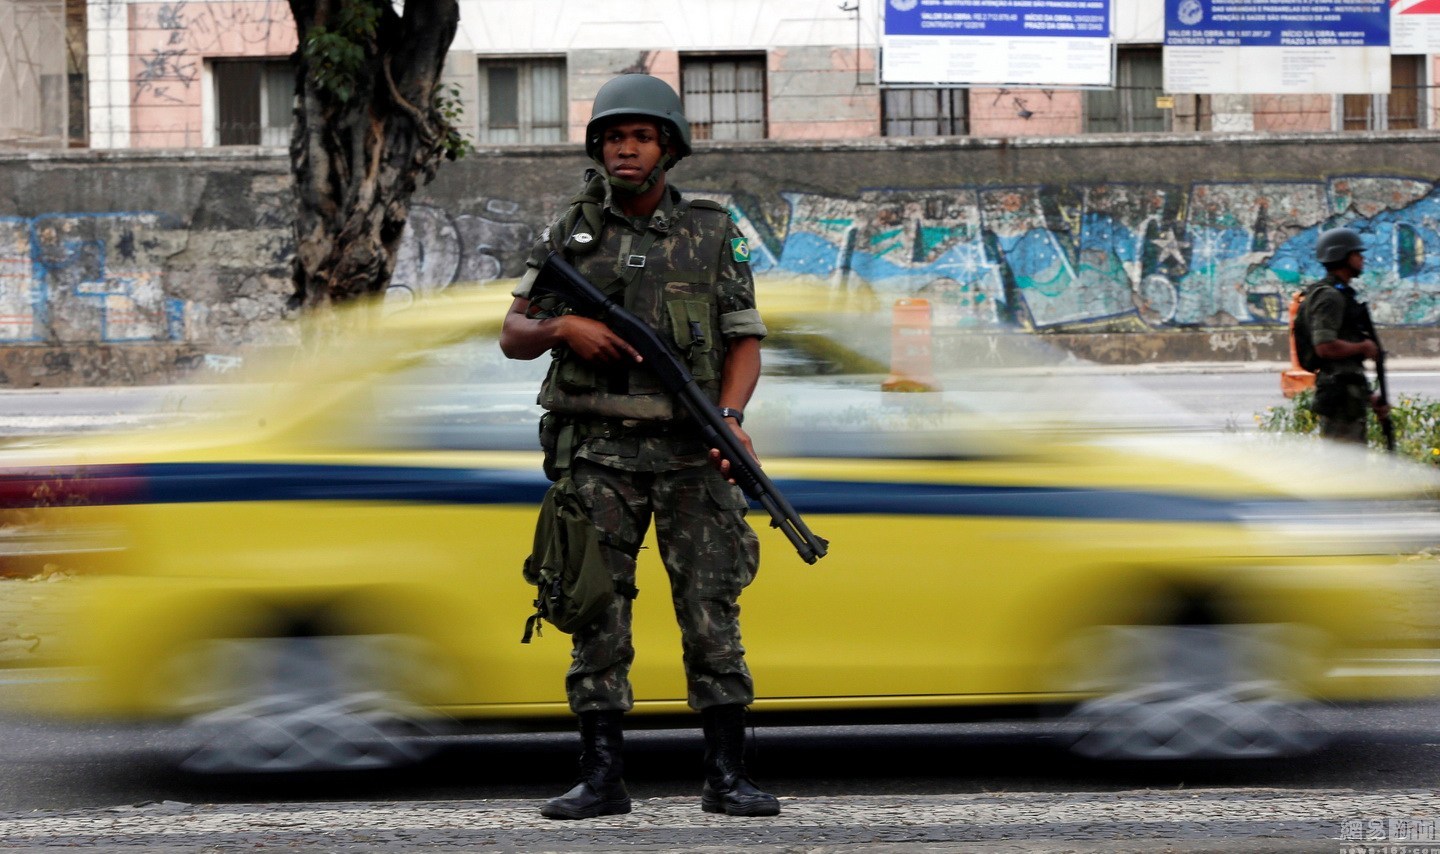 巴西军人街头巡逻 迎接2016年里约奥运会